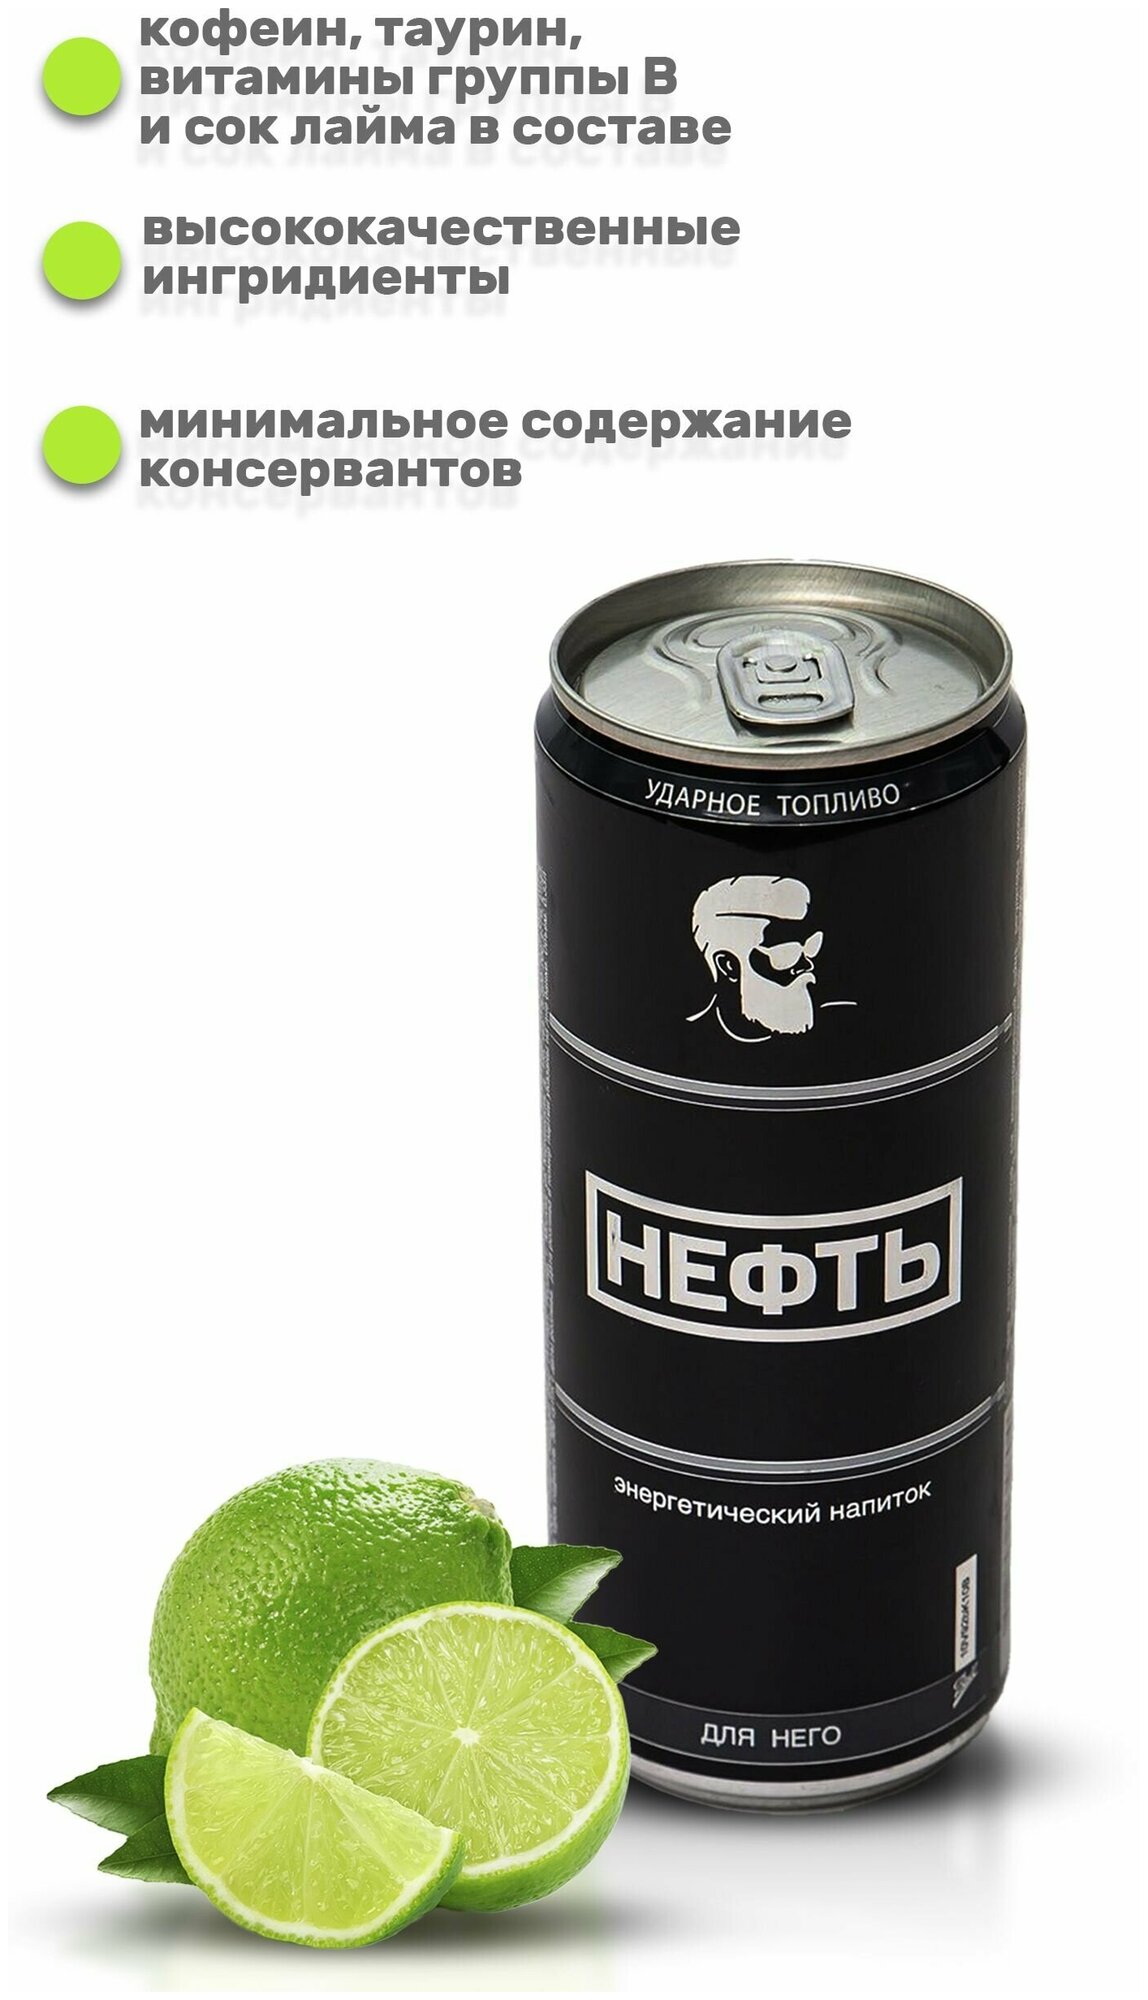 Энергетический напиток Neft безалкогольный, Для Него (лайм), 6 банок - фотография № 2